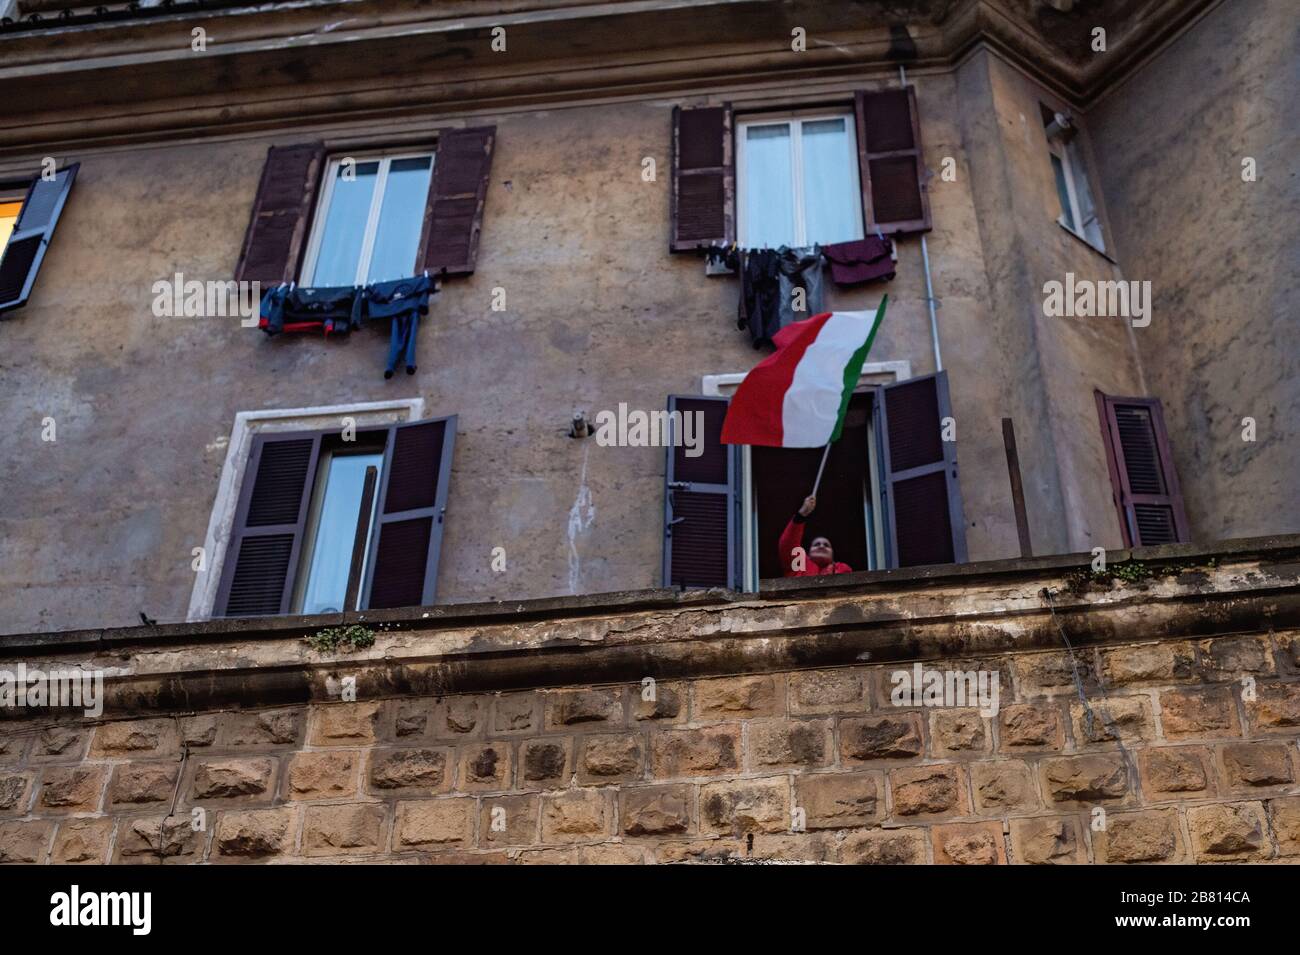 À Rome, des drapeaux italiens s'affichaient sur les balcons pendant l'épidémie de Coronavirus qui a fortement frappé l'Italie. Banque D'Images